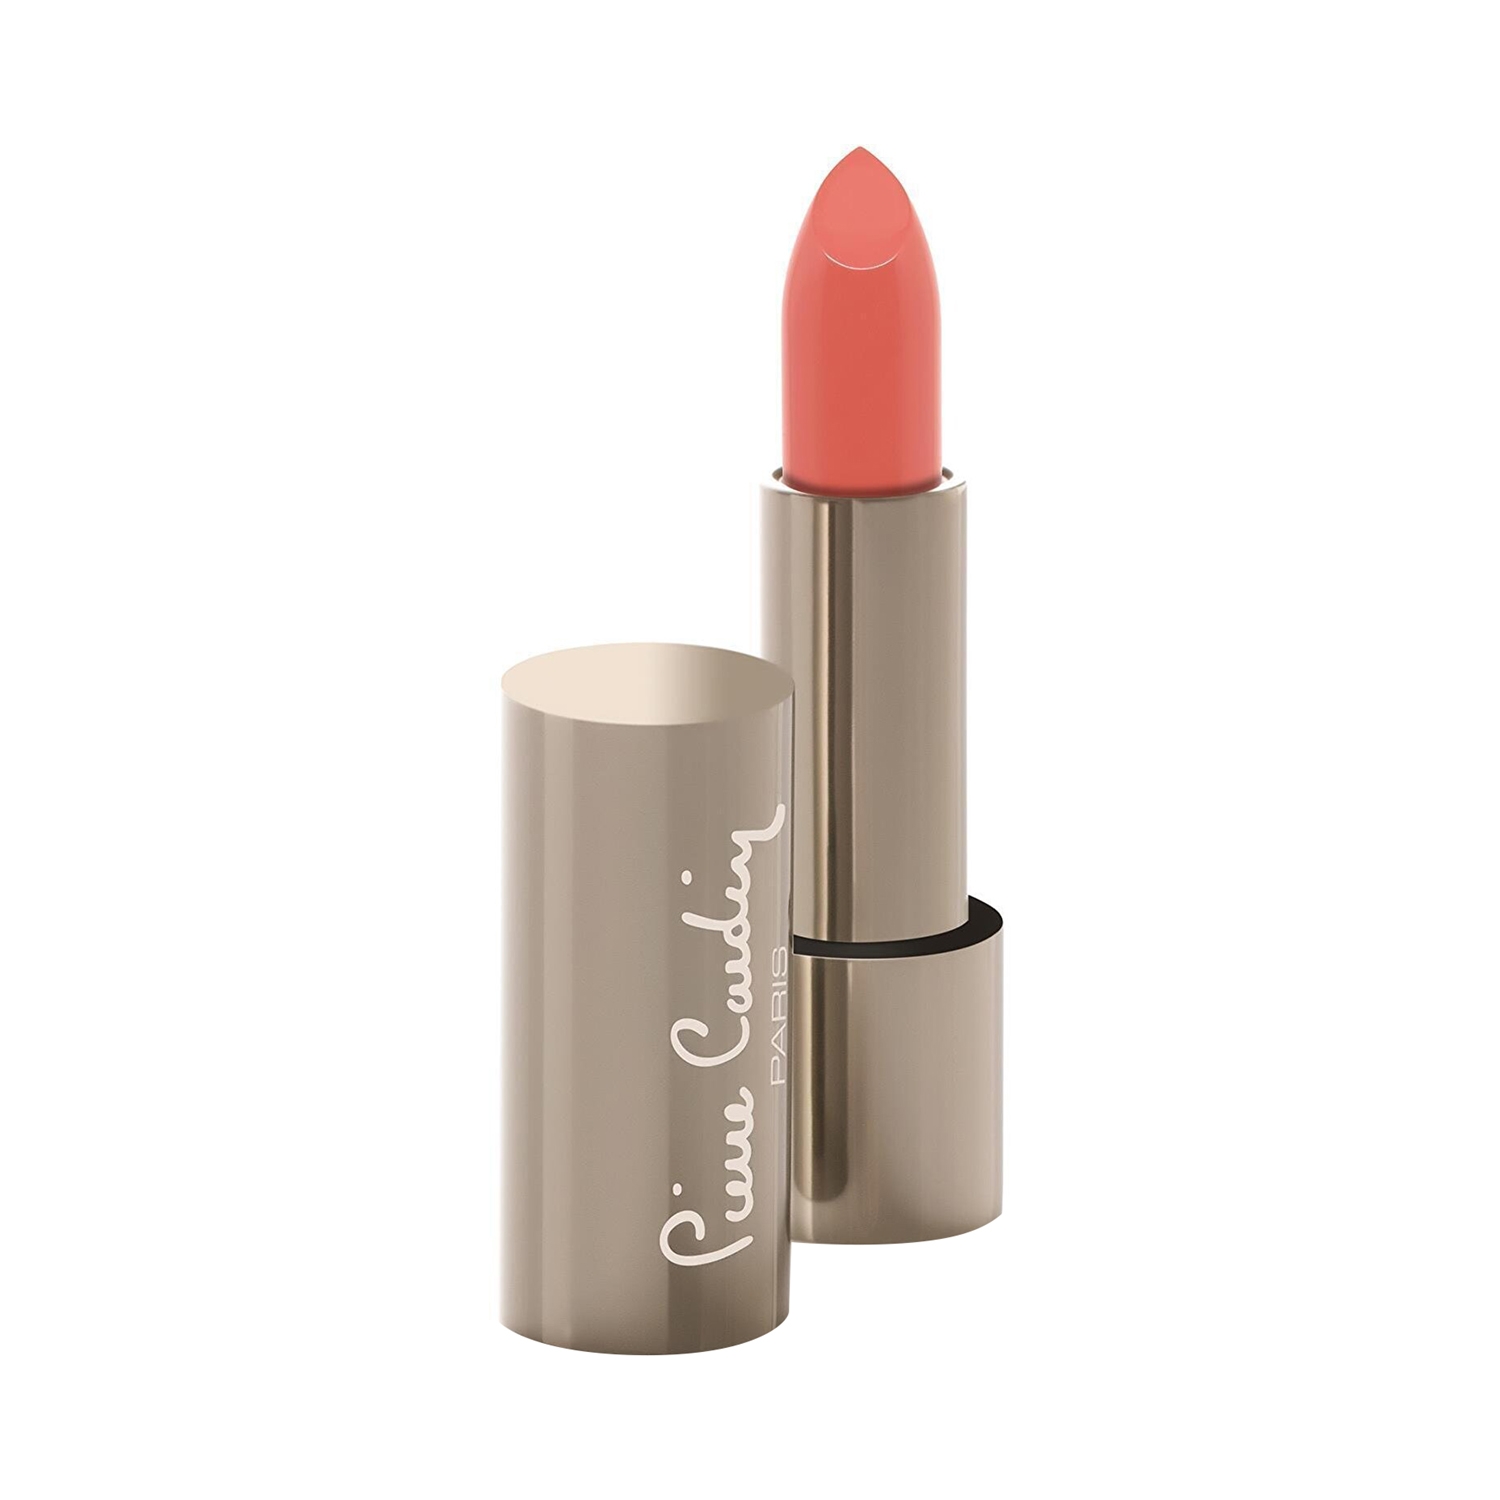 Pierre Cardin Paris Magnetic Dream Lipstick - 262 Pale Peach (4g)